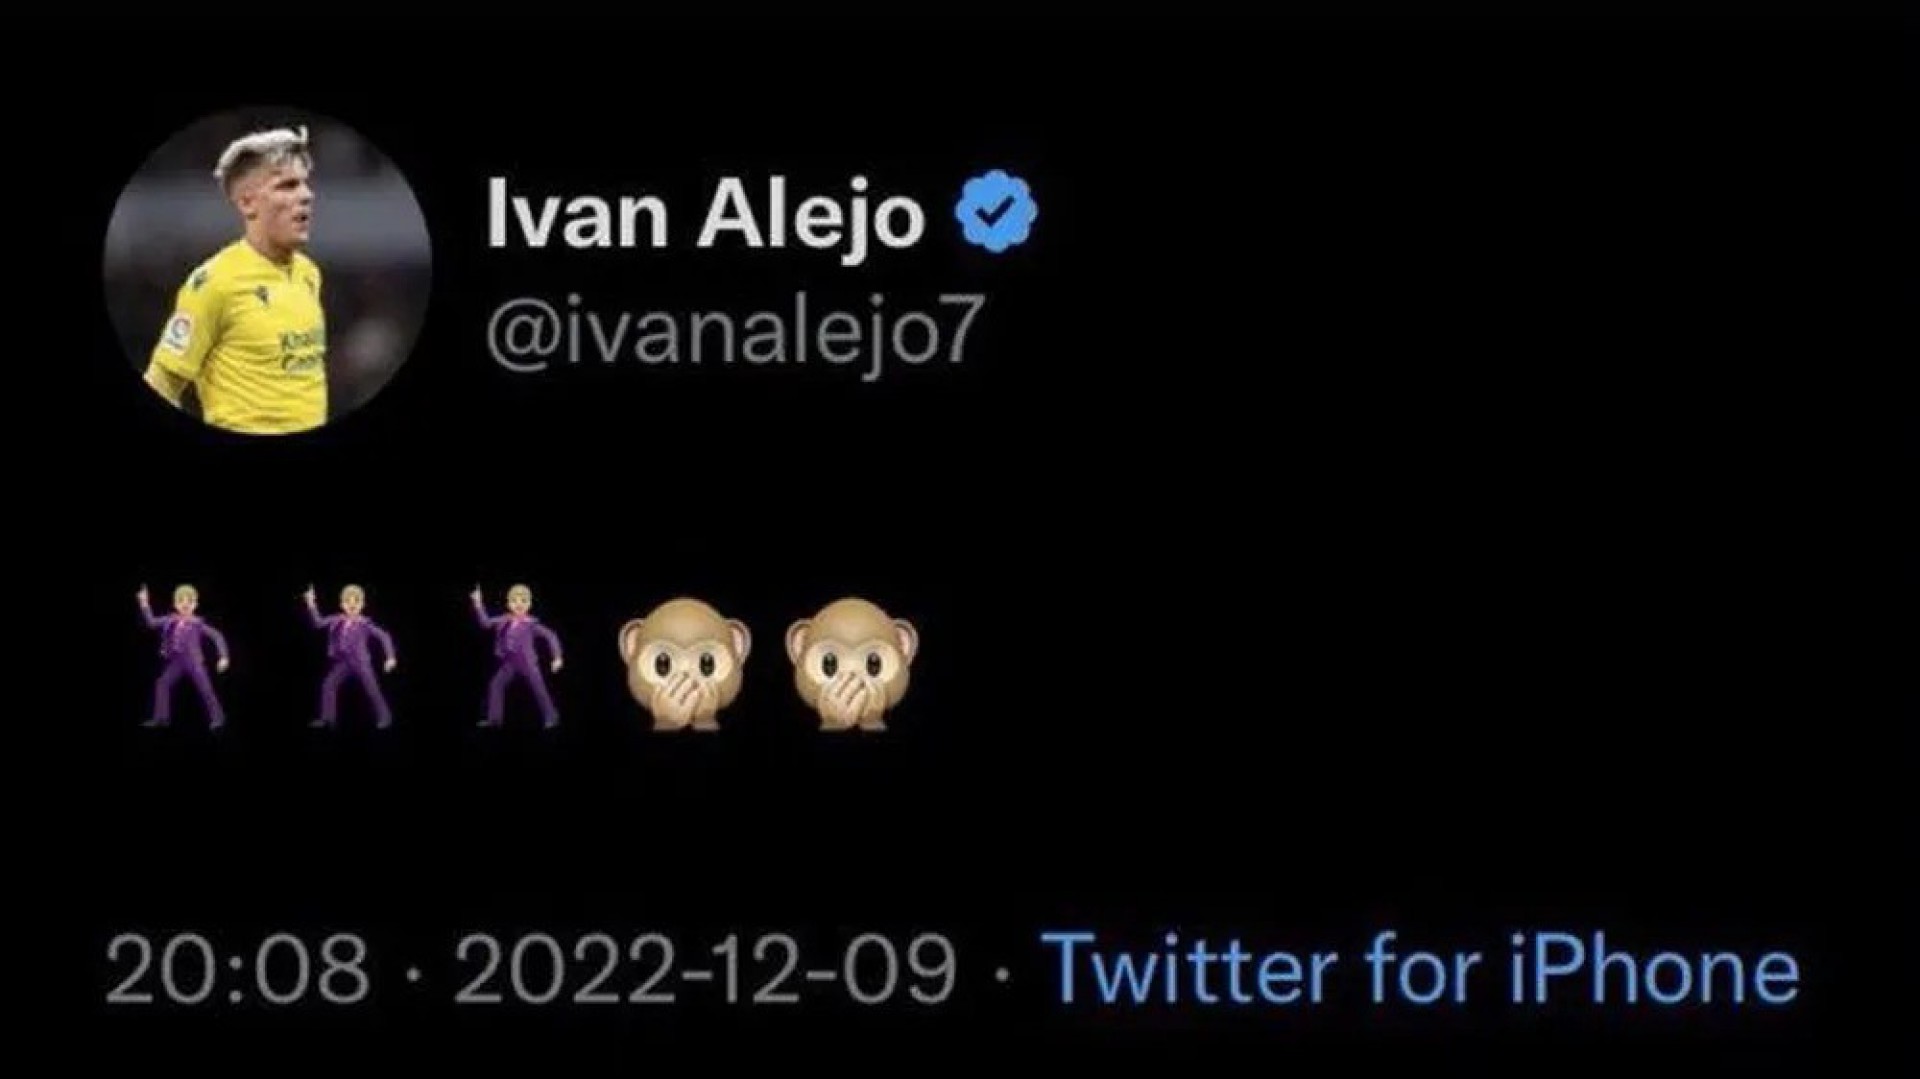 Mensagem de Ivan Alejo com cunho racista que foi apagada - Reprodução/Twitter